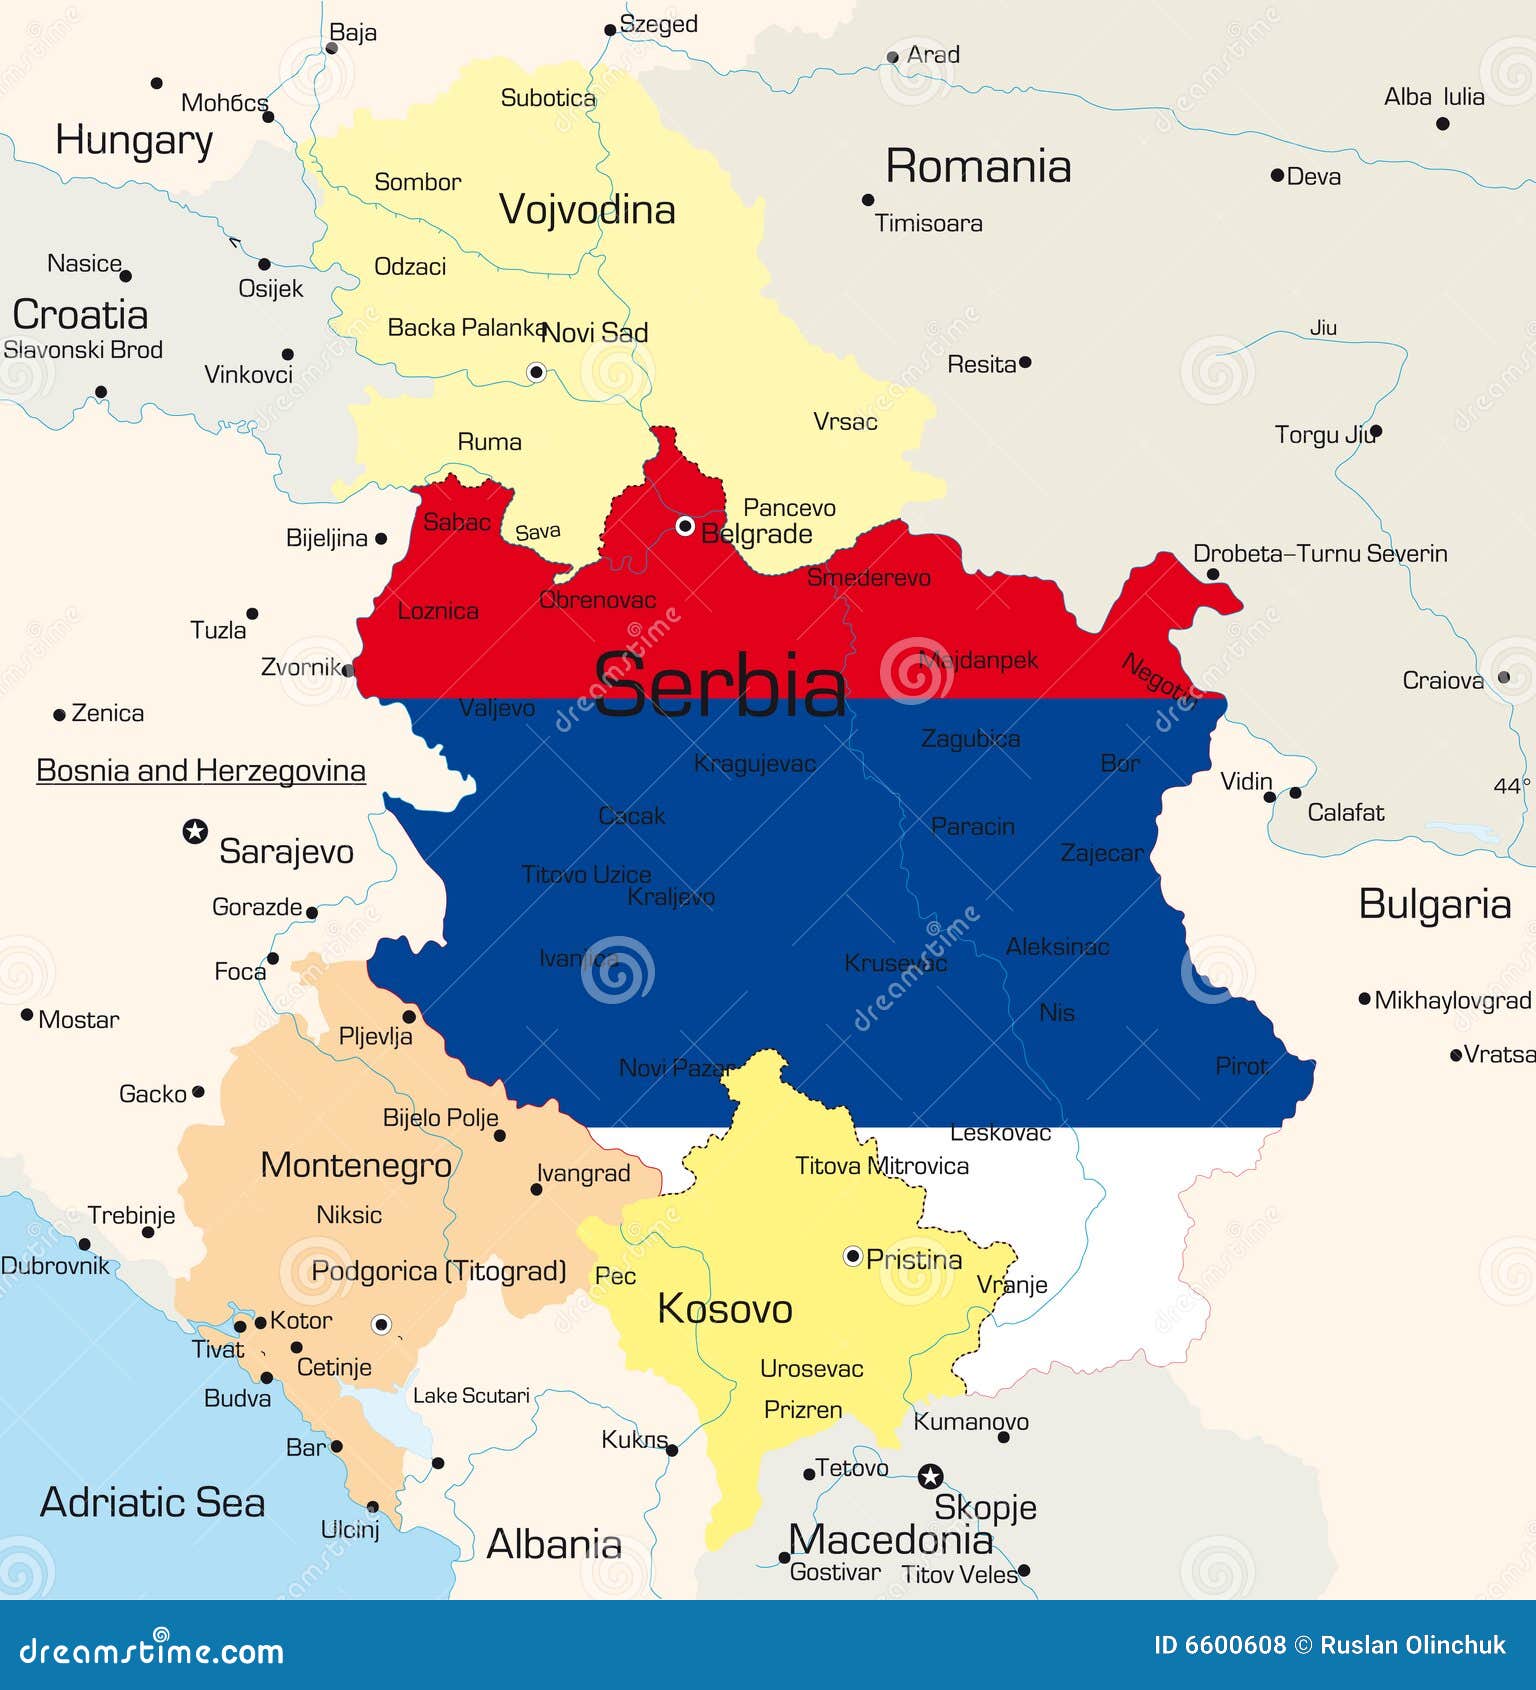 塞尔维亚完全支持RES - 能源界